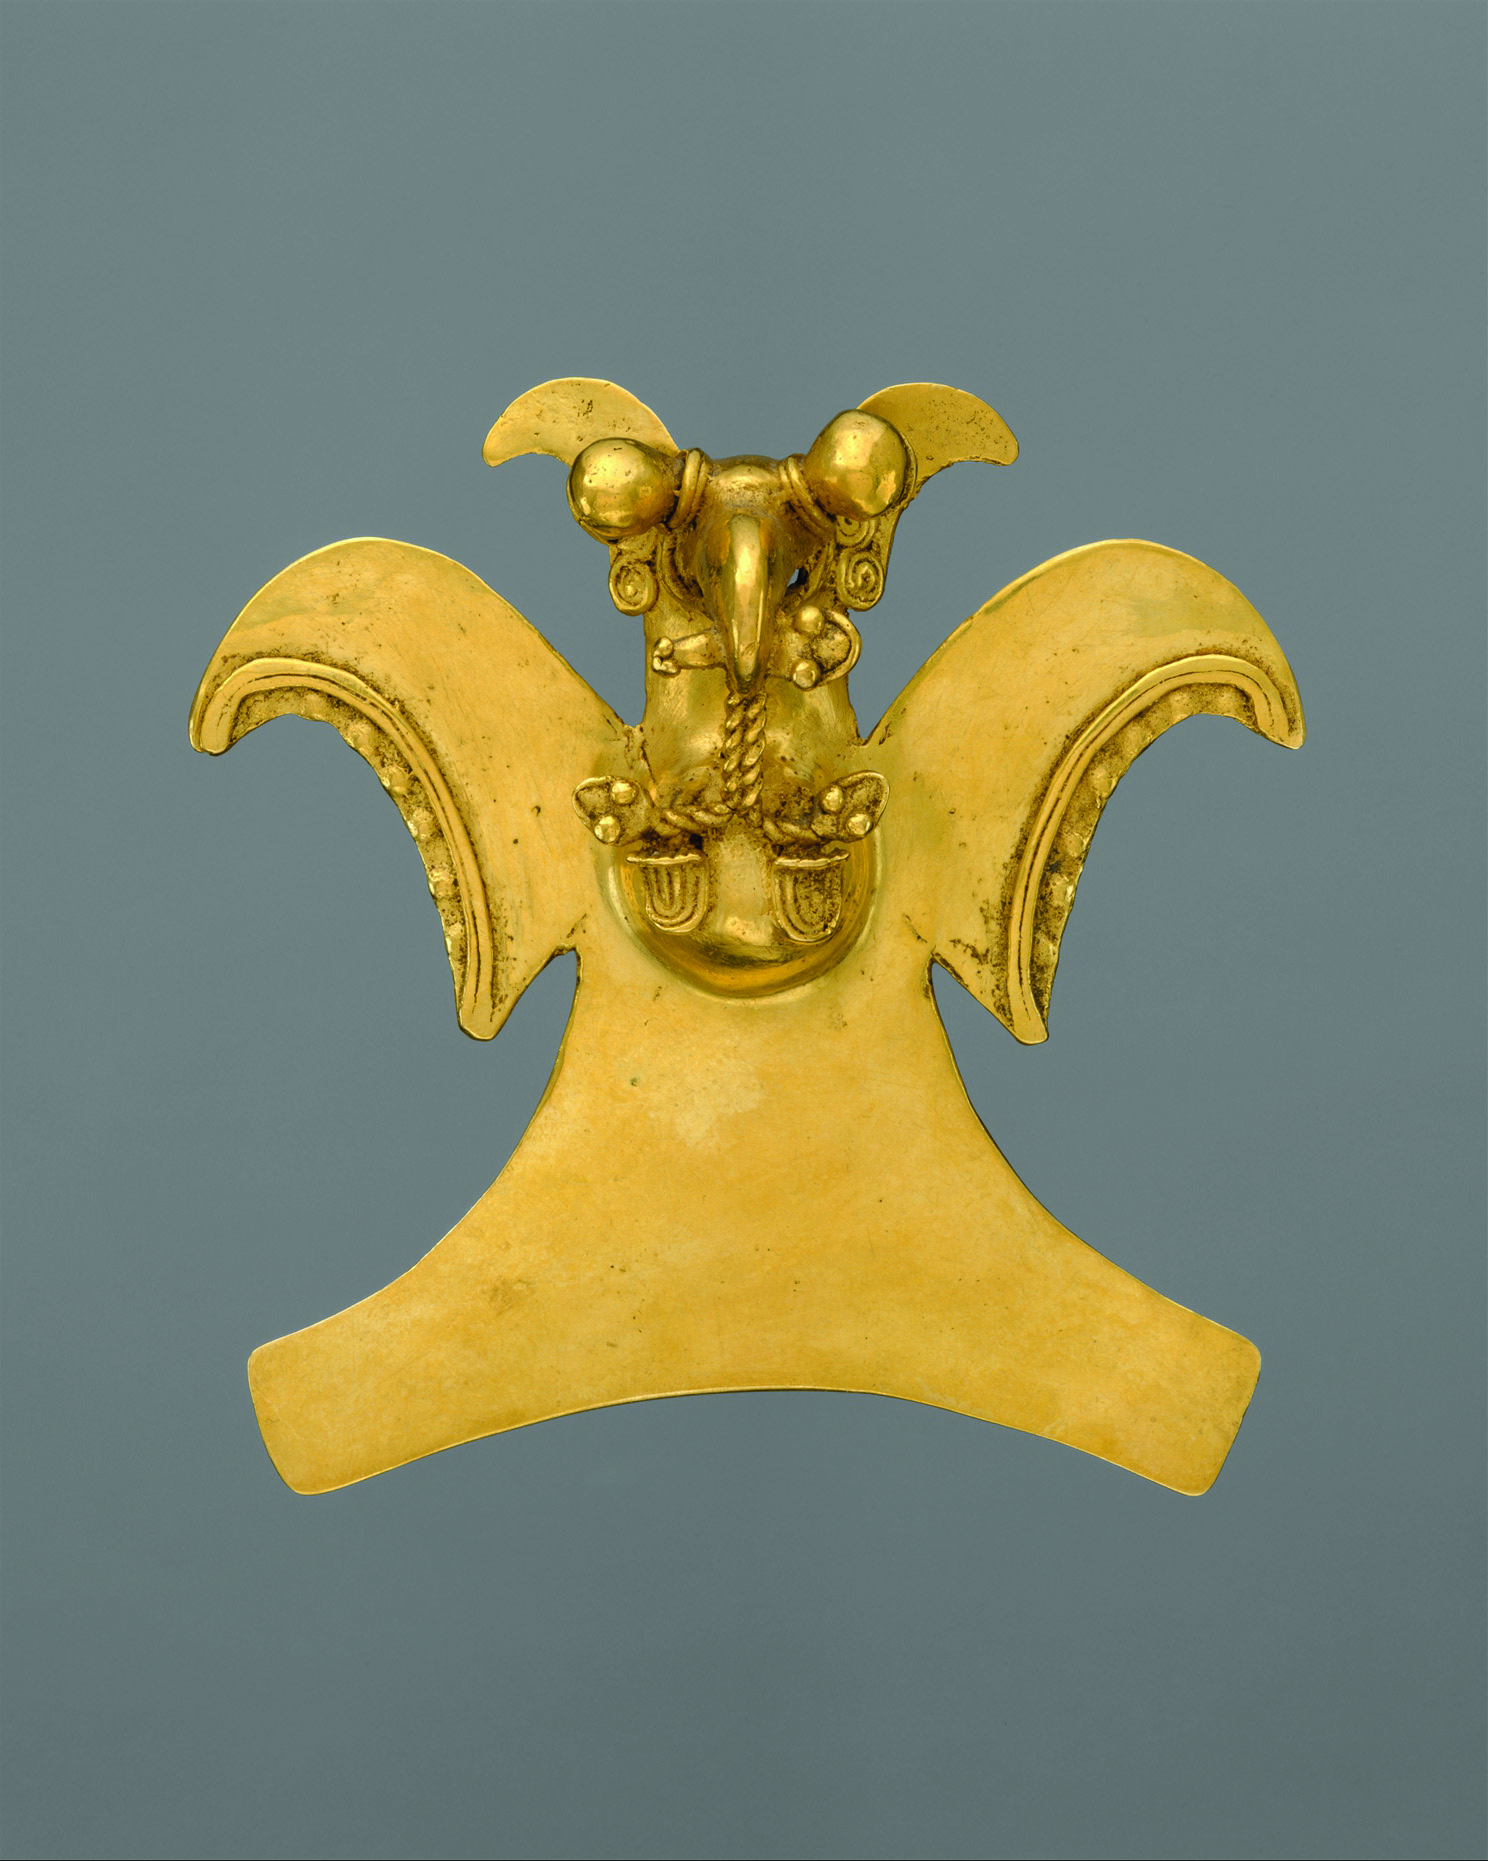 møbel Regelmæssighed Et centralt værktøj, der spiller en vigtig rolle Treasures beyond gold - The Magazine Antiques